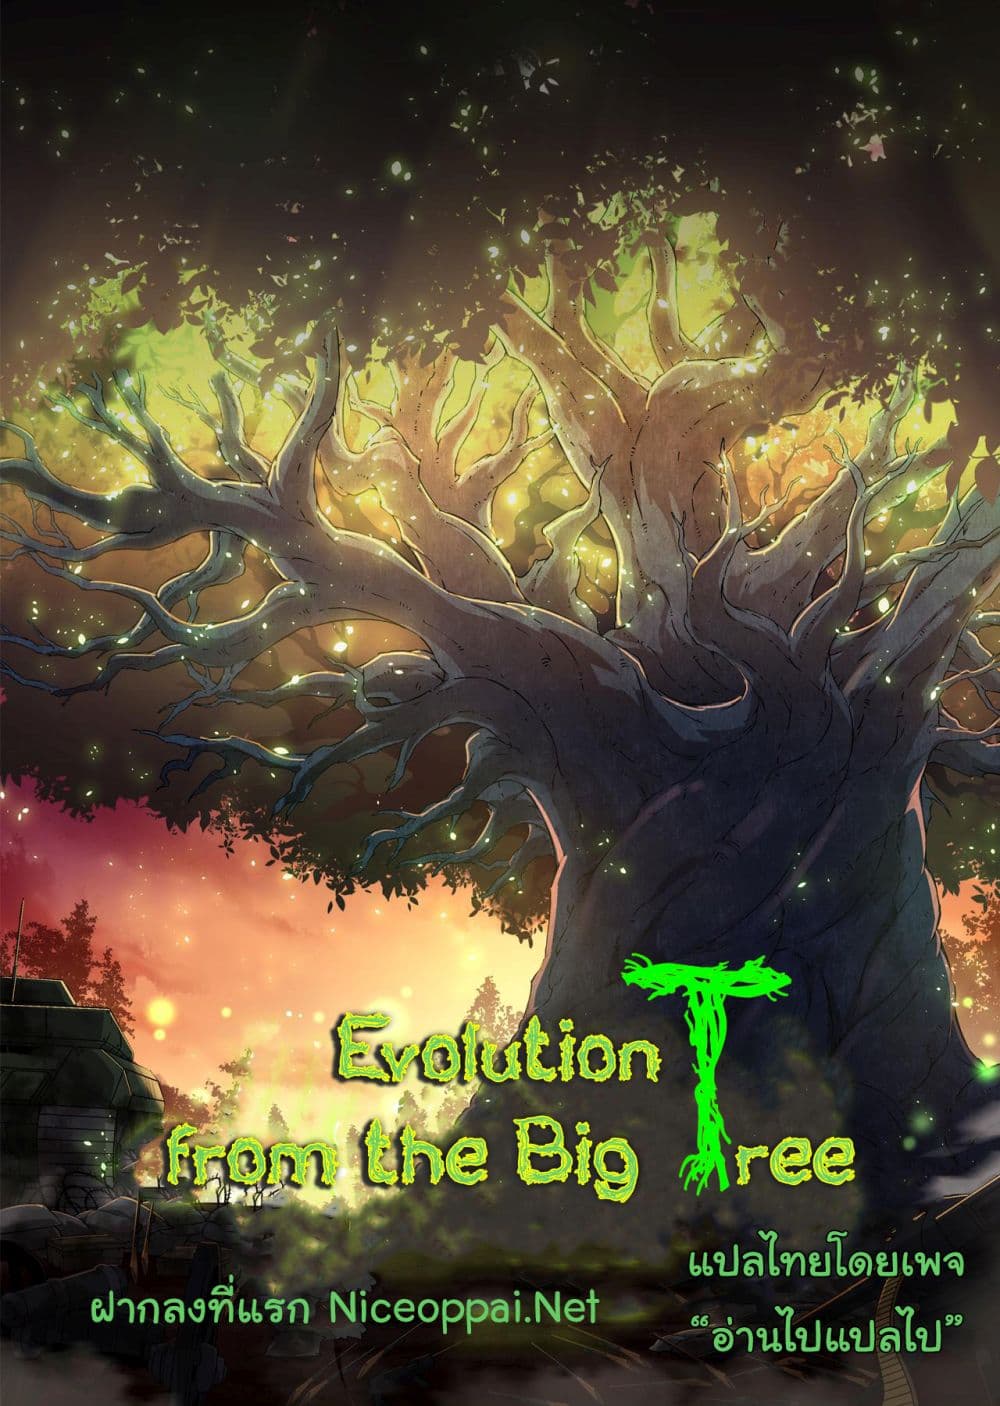 Evolution from the Big Tree Ã Â¸â€¢Ã Â¸Â­Ã Â¸â„¢Ã Â¸â€”Ã Â¸ÂµÃ Â¹Ë† 4 (1)